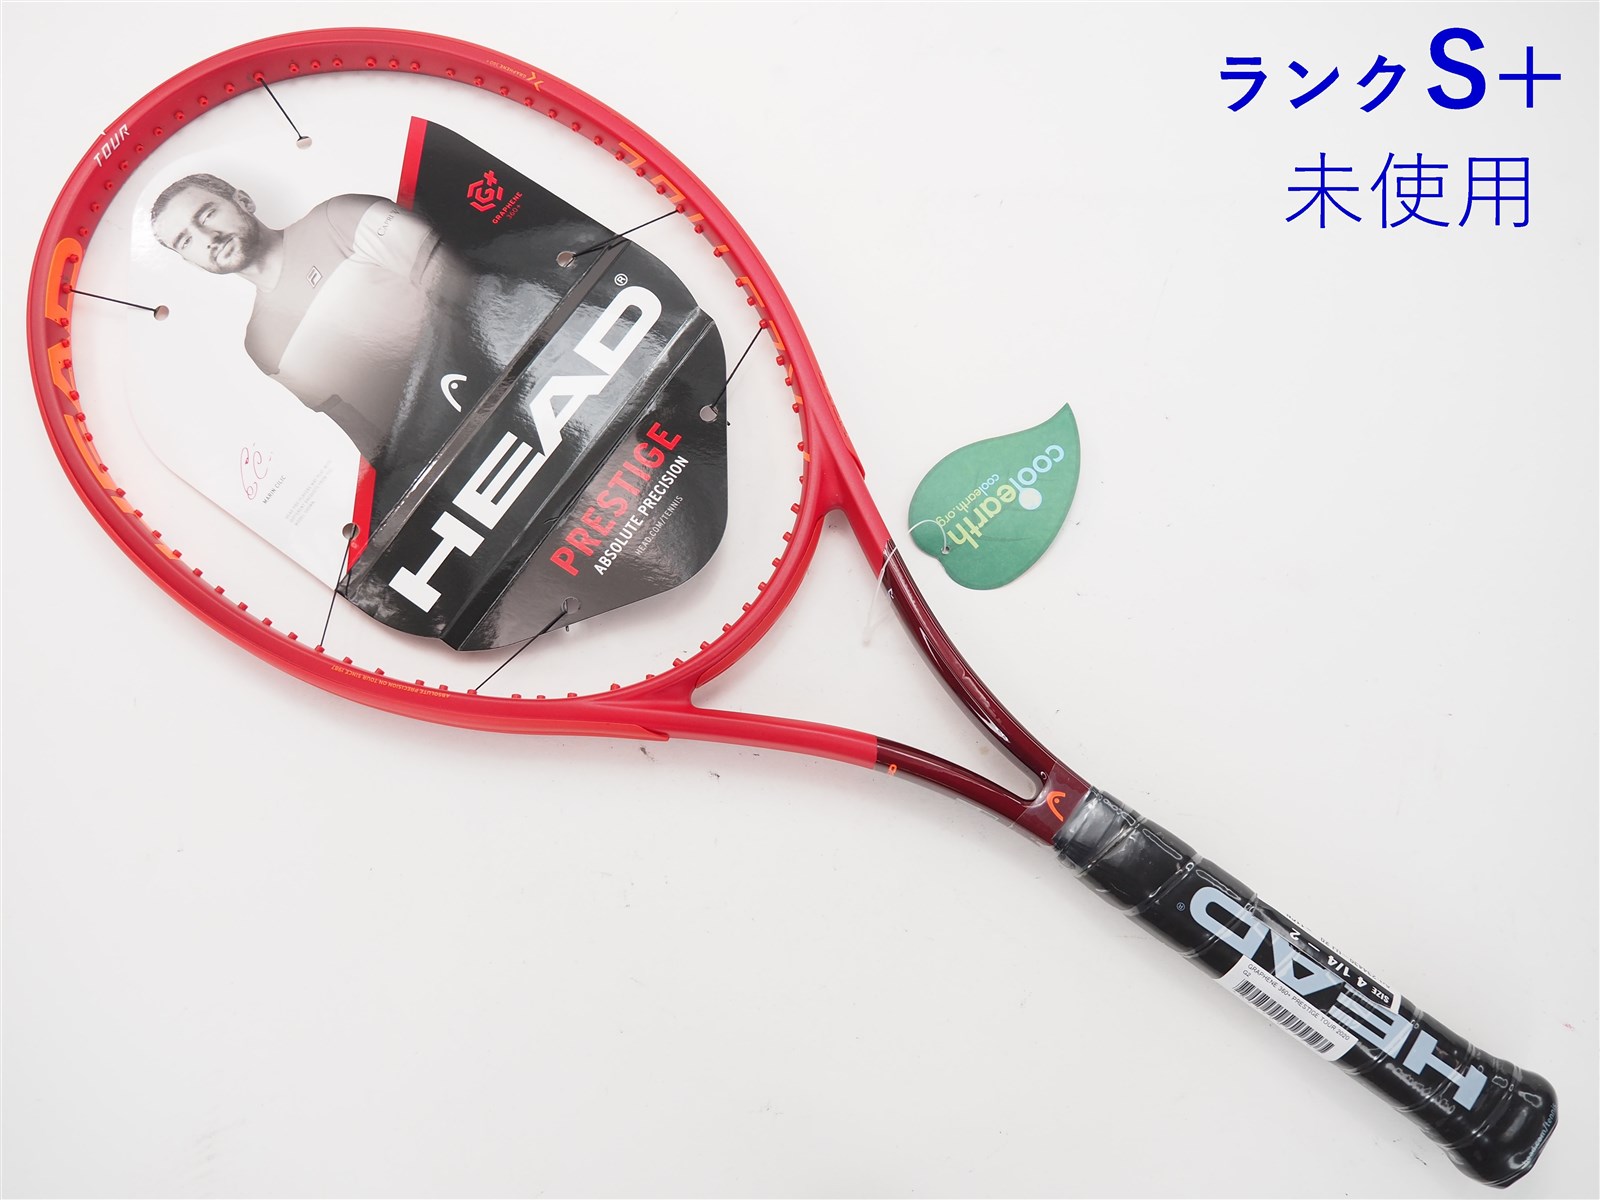 テニスラケット ヘッド グラフィン 360プラス インスティンクト エス 2020年モデル (G1)HEAD GRAPHENE 360+ INSTINCT S 2020